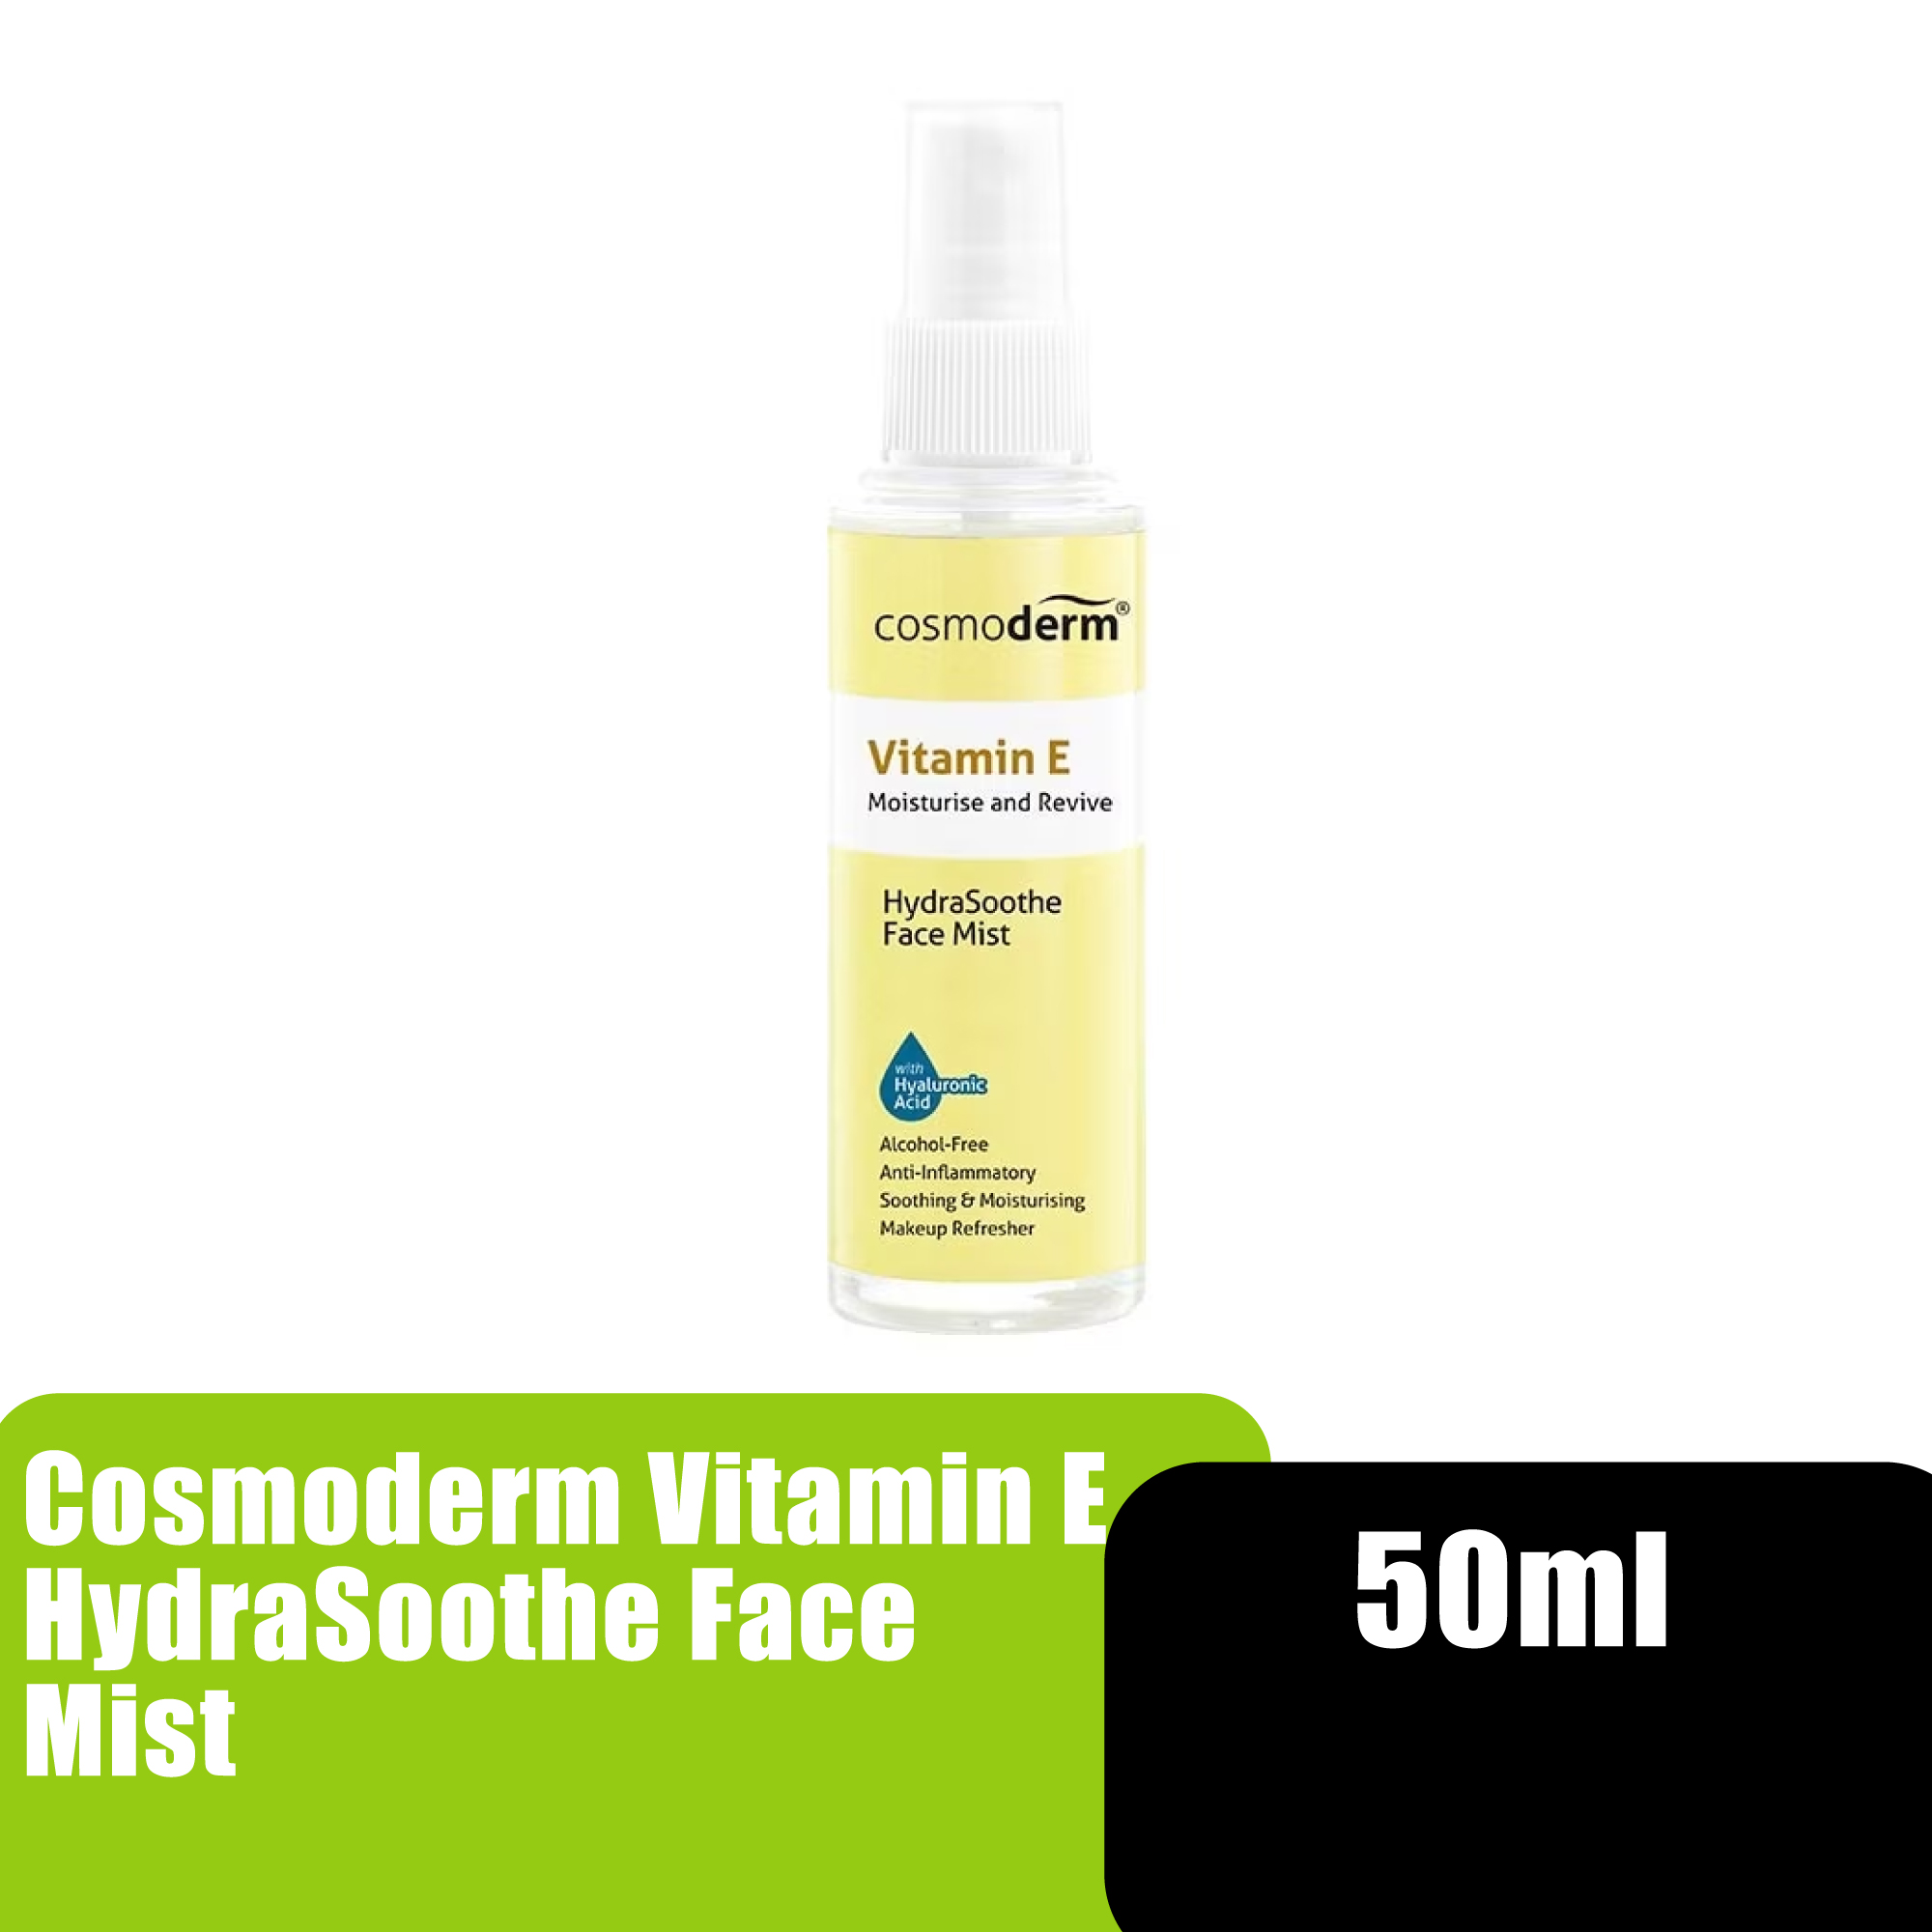 Cosmoderm Vitamin E HydraSoothe Face Mist 50ml